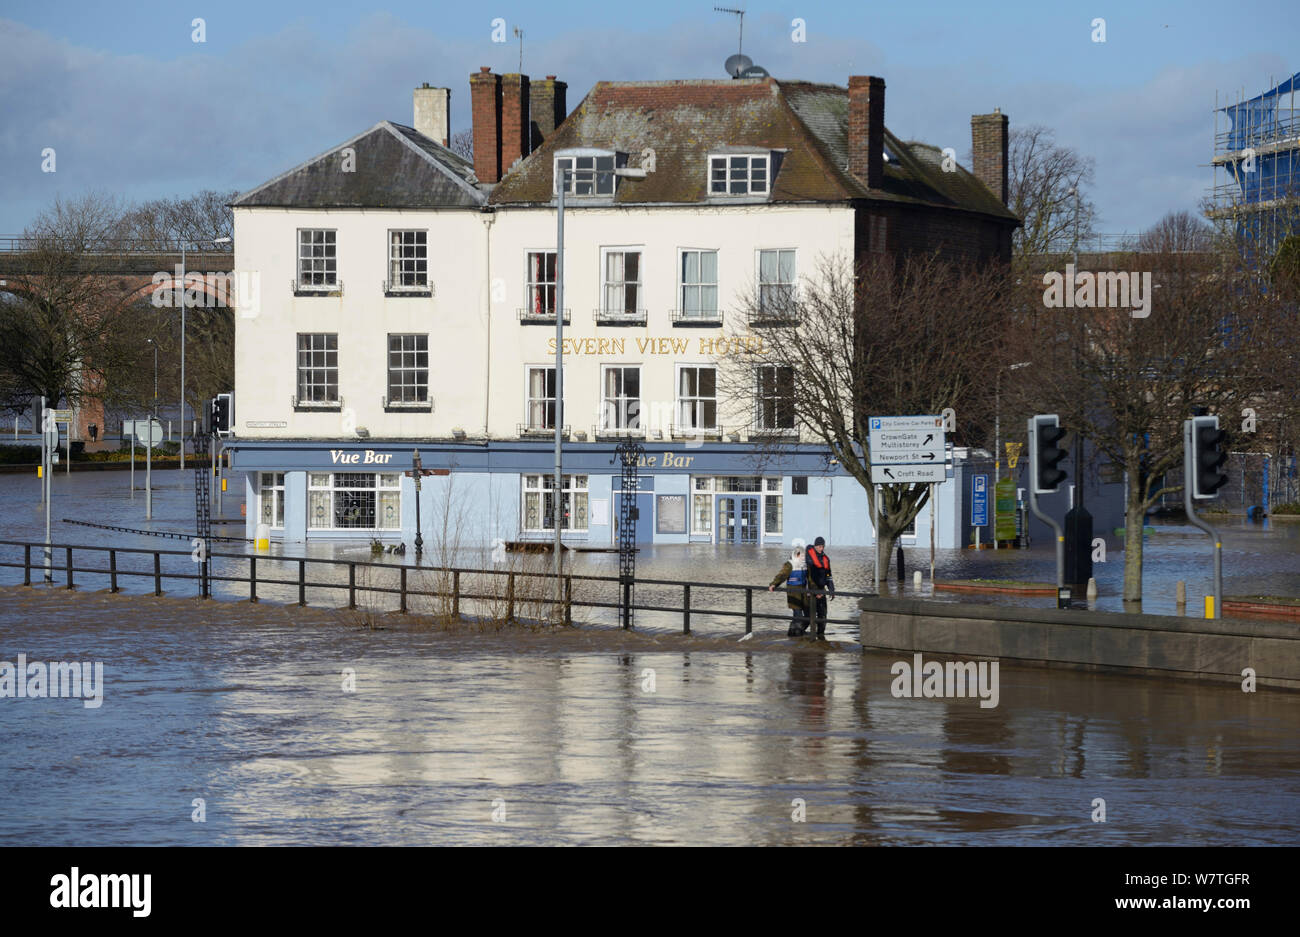 Severn View Hotel durante las inundaciones récord, Worcester, Inglaterra, Reino Unido, 13 de febrero de 2014. Foto de stock